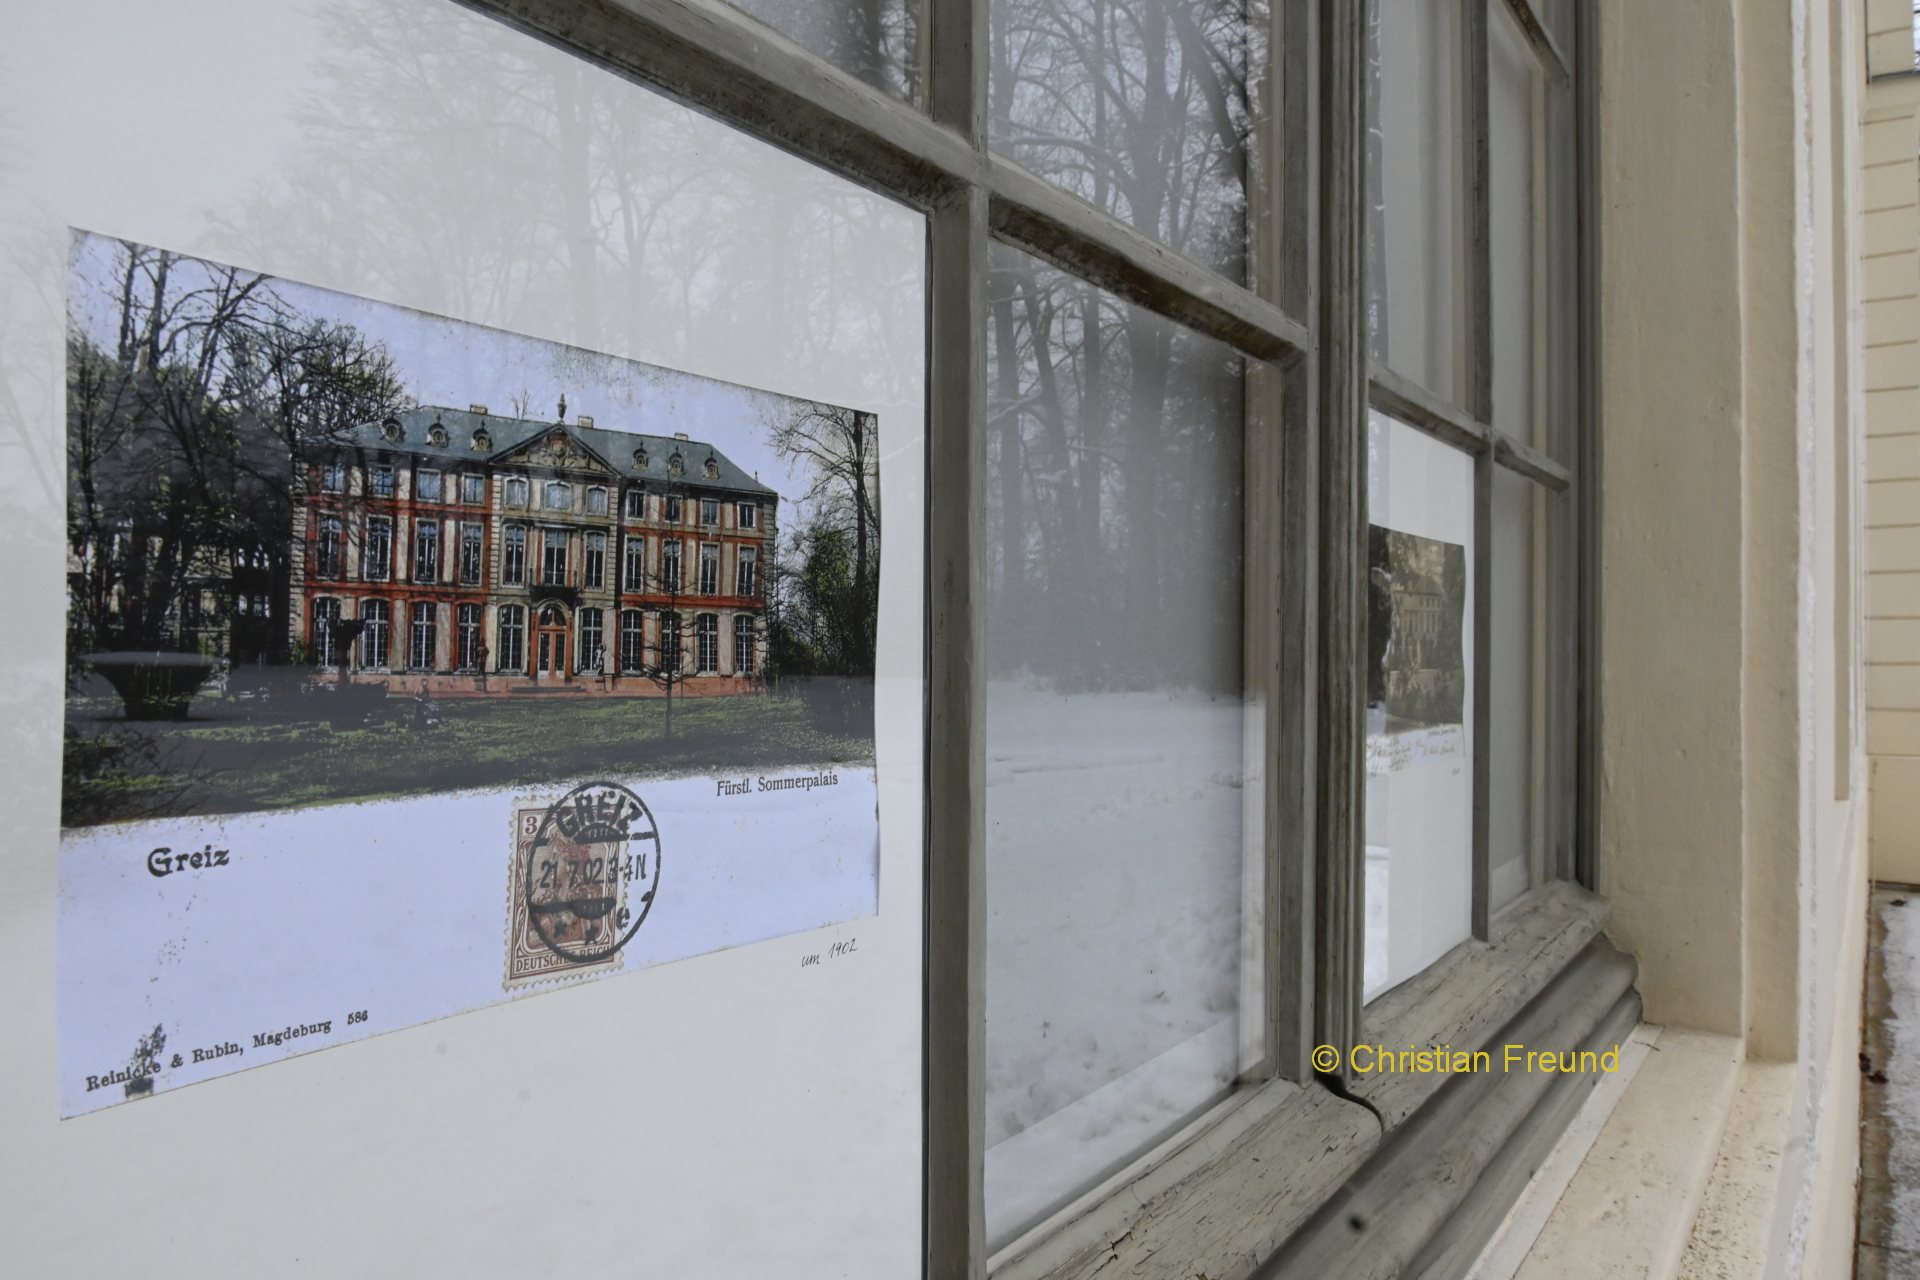 Historische Postkarten im Großformat an Fenstern des Sommerpalais